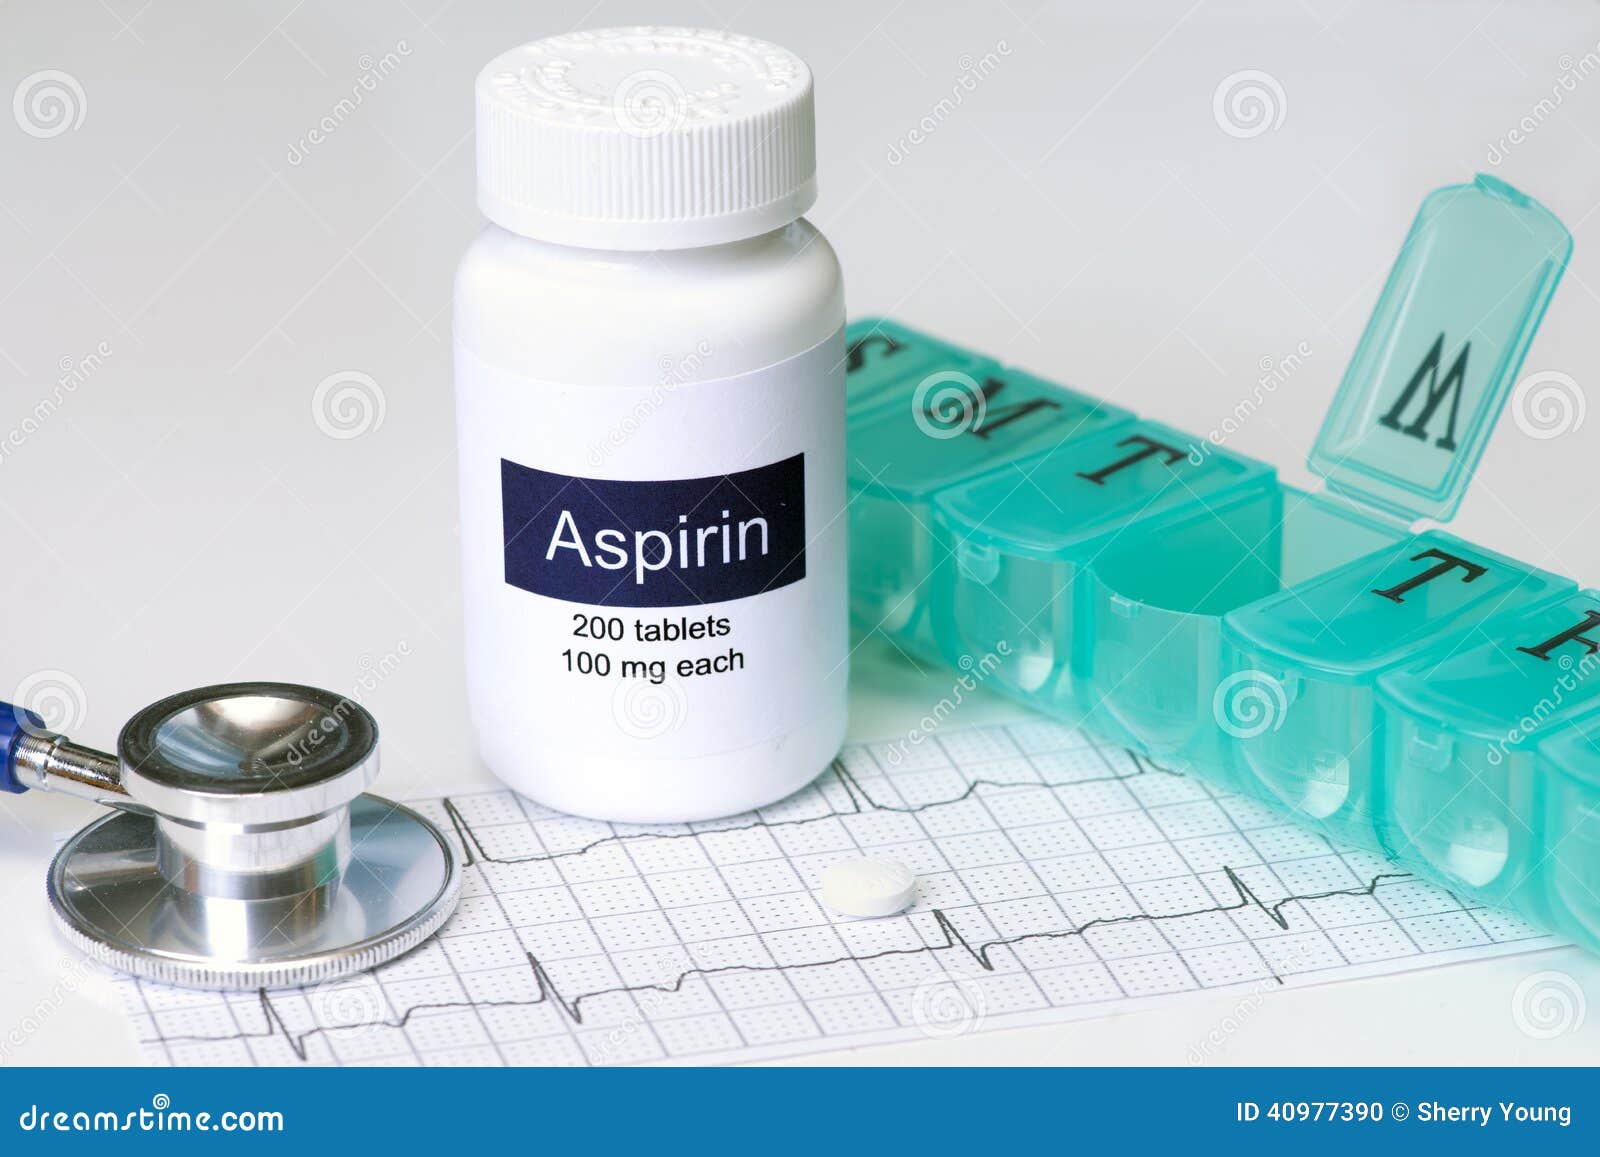 daily aspirin